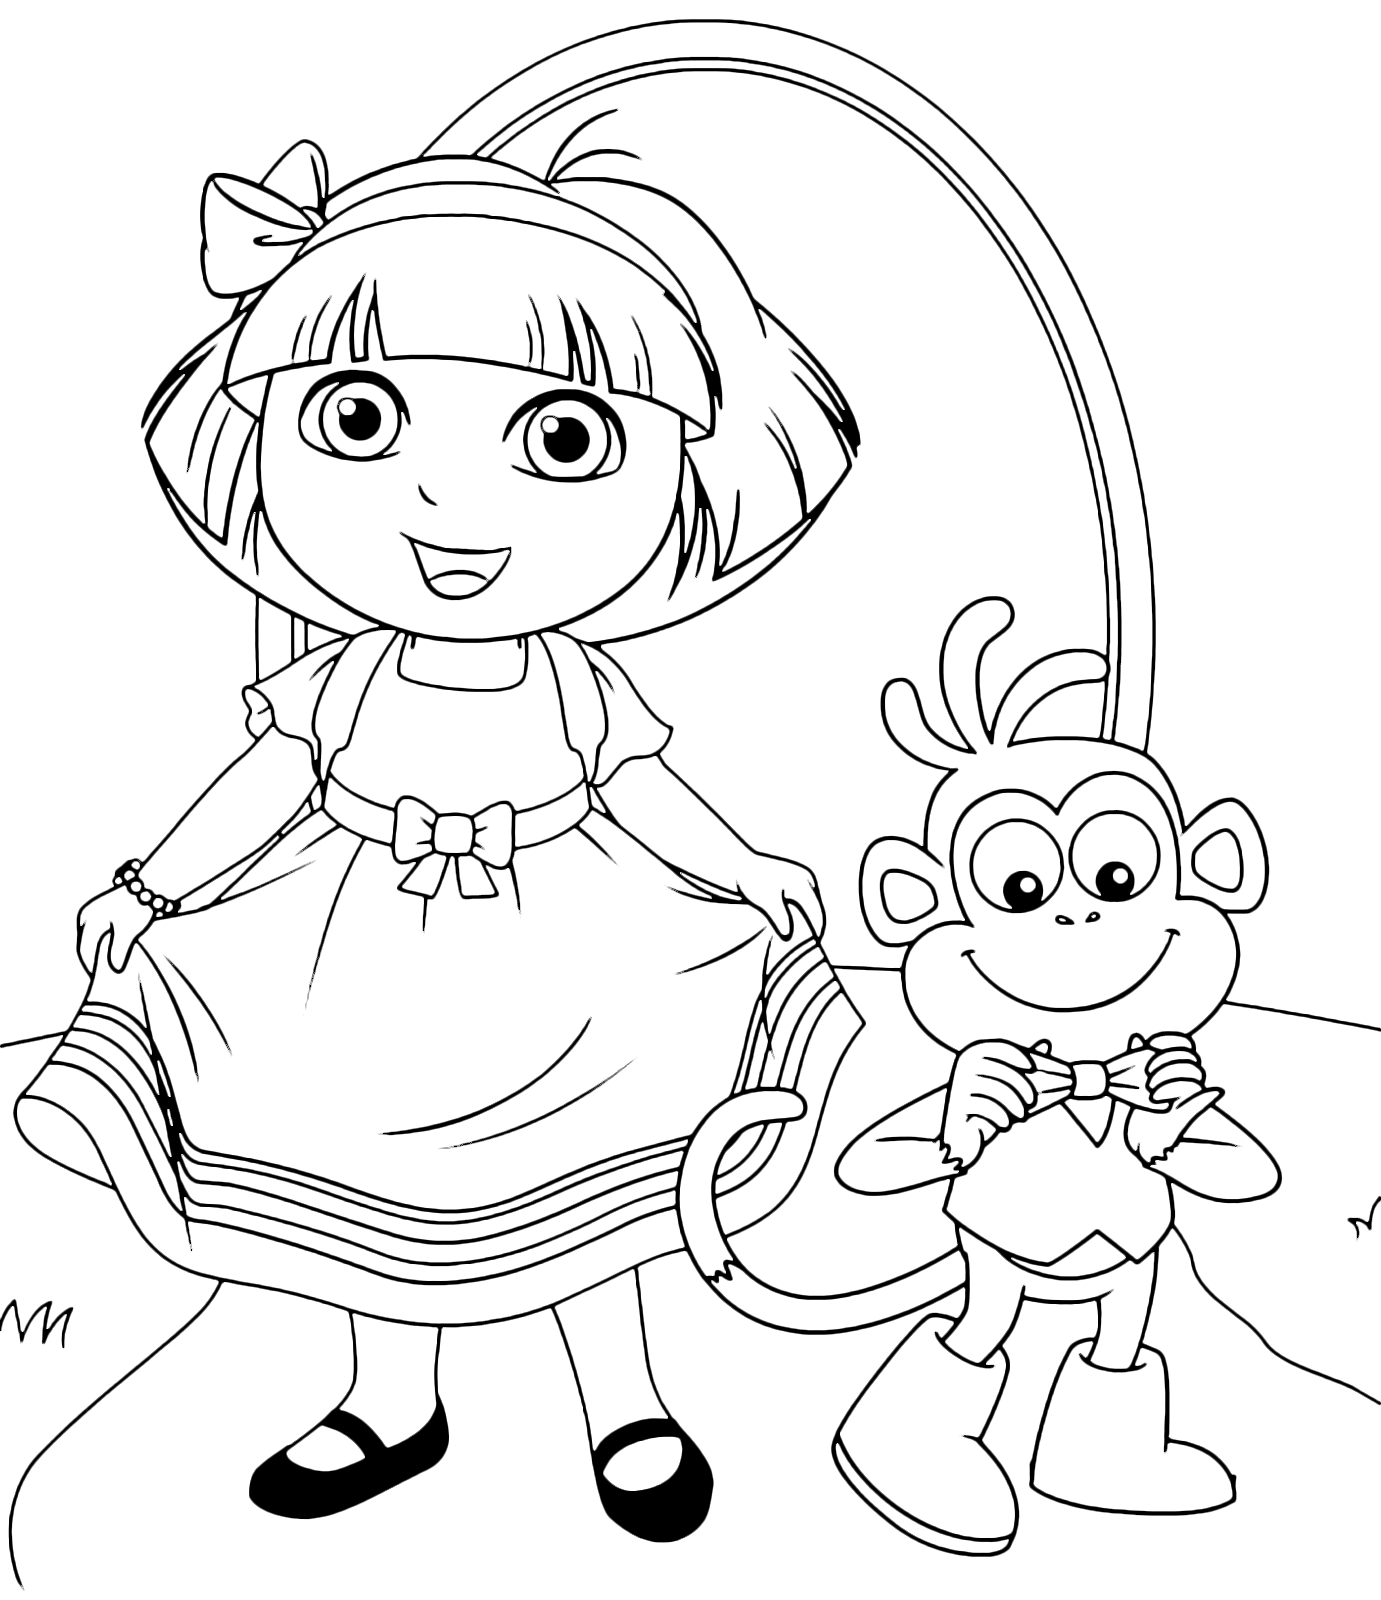 Dora l'esploratrice - Dora e Boots indossano vestiti molto eleganti